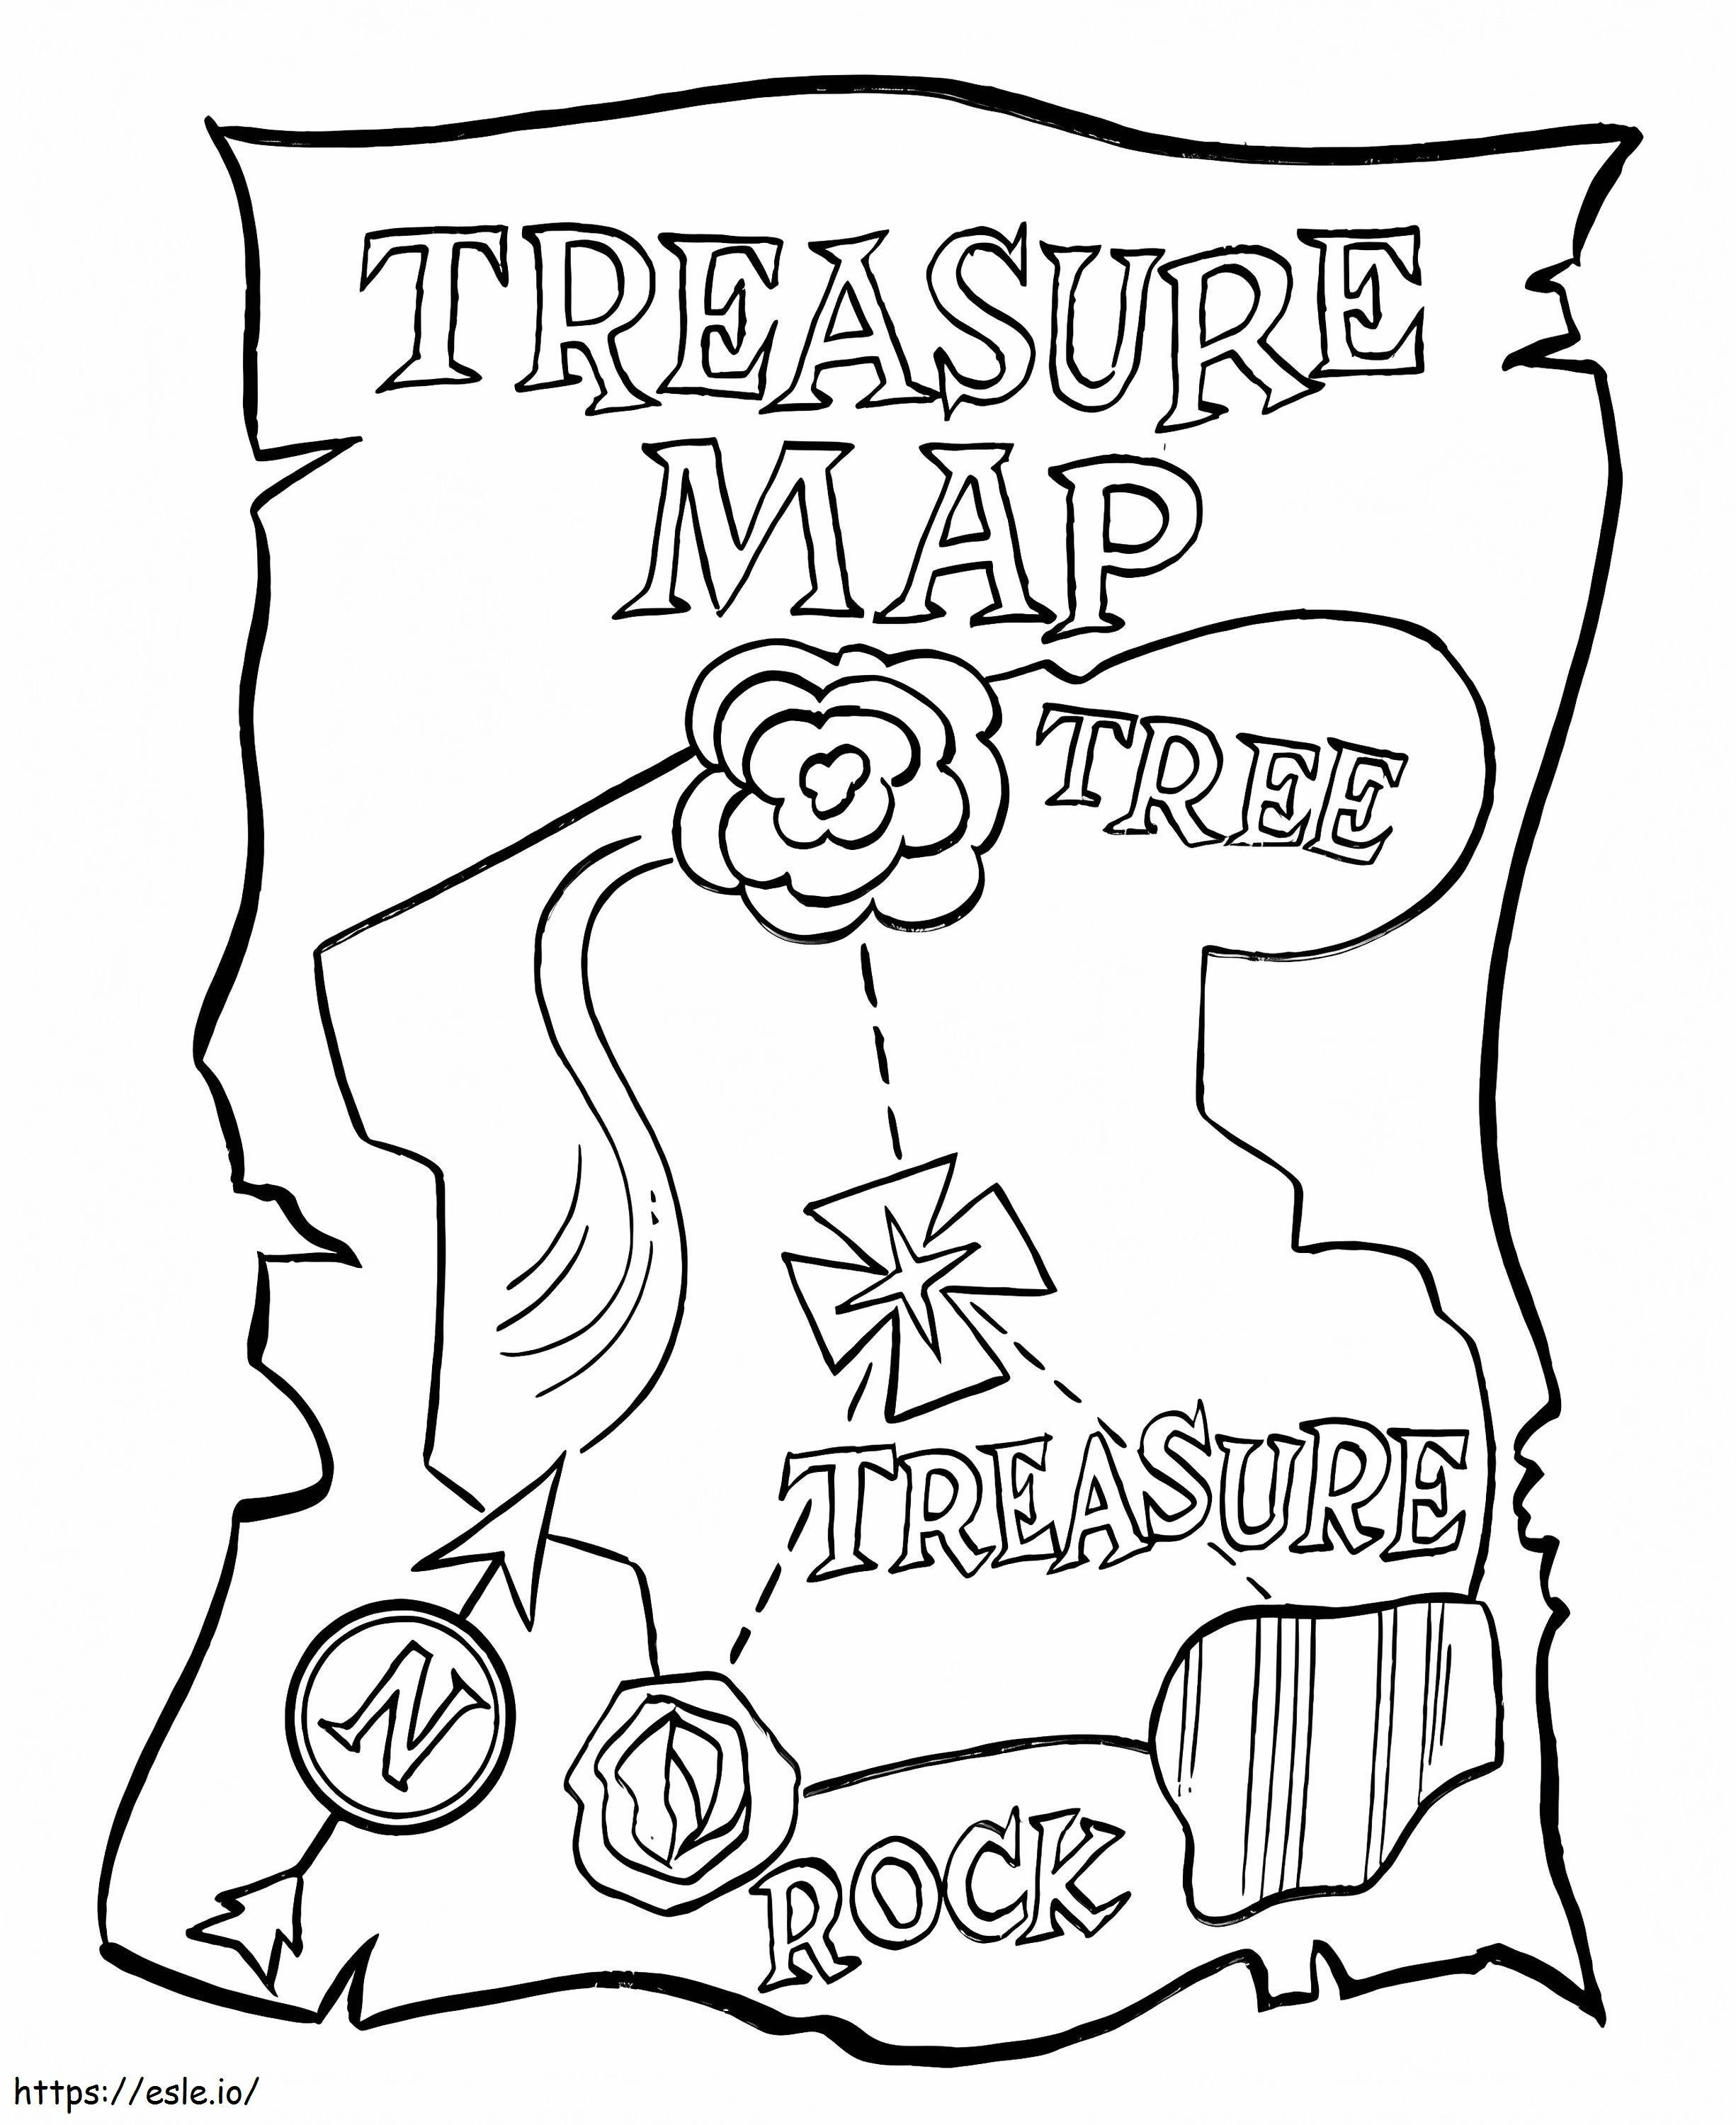 Um Mapa do Tesouro para colorir